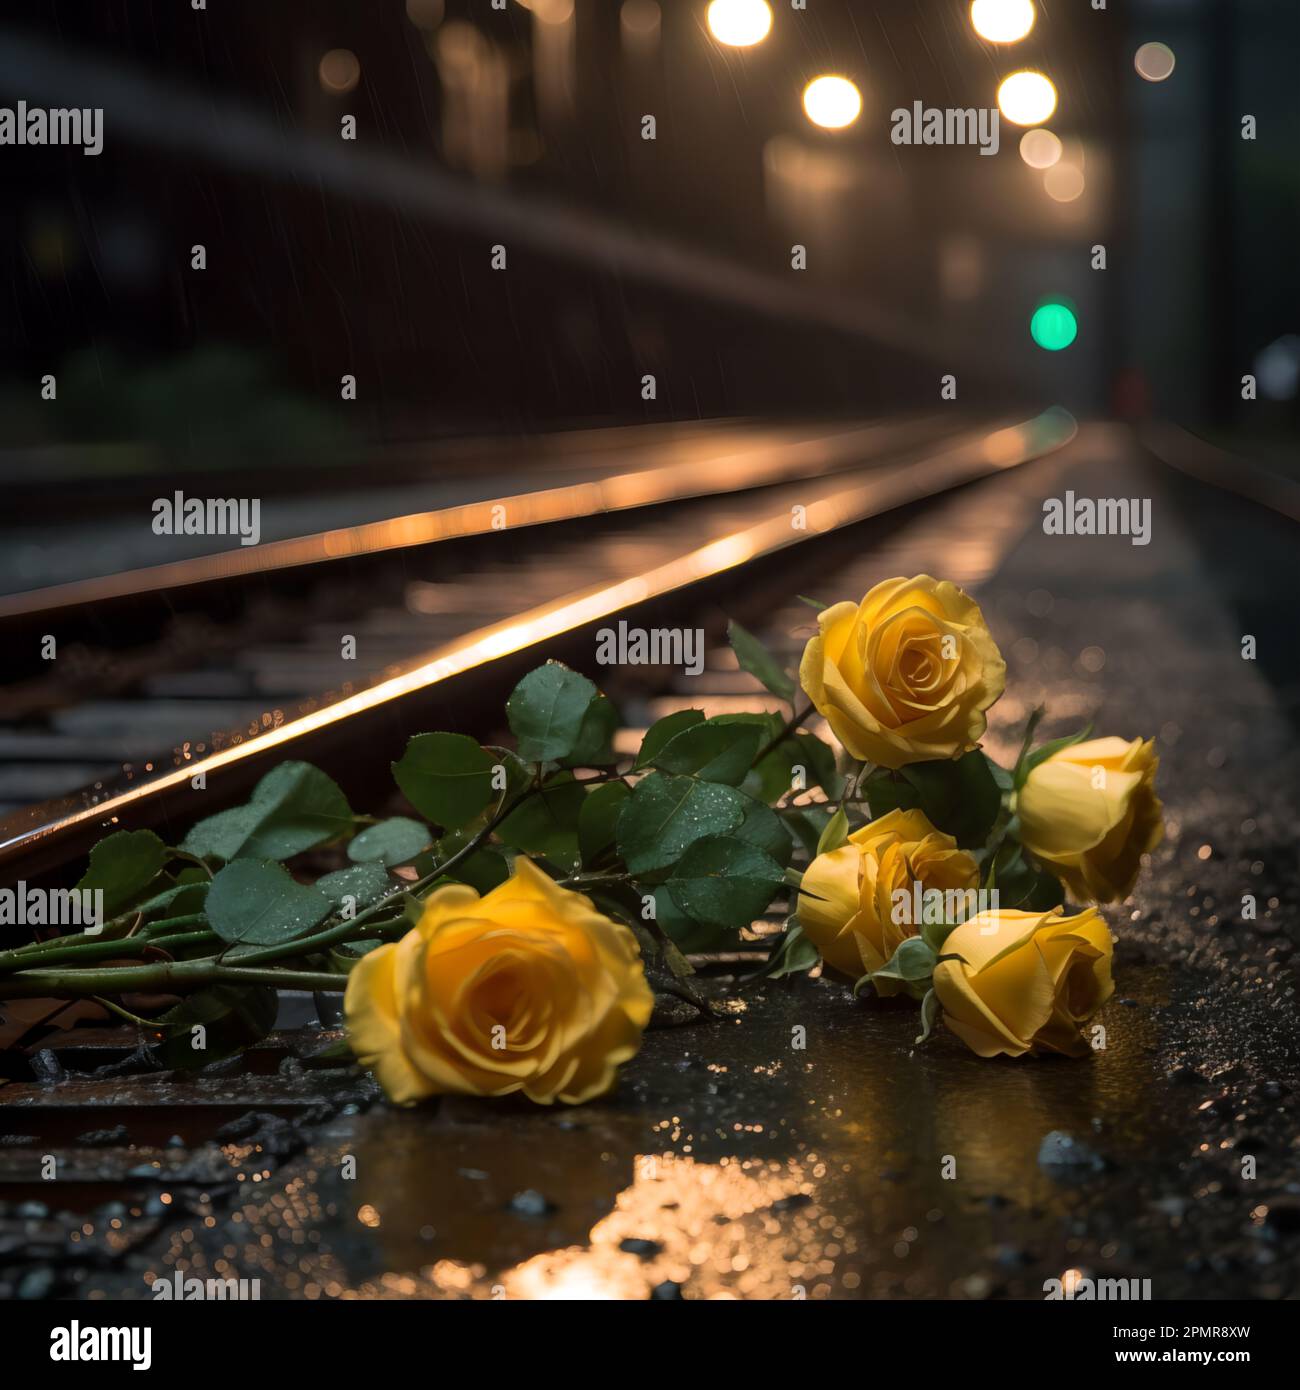 Una vita morta di rose gialle disseminate lungo i binari di una ferrovia, i vibranti petali gialli contrastano con il metallo opaco delle rotaie Foto Stock